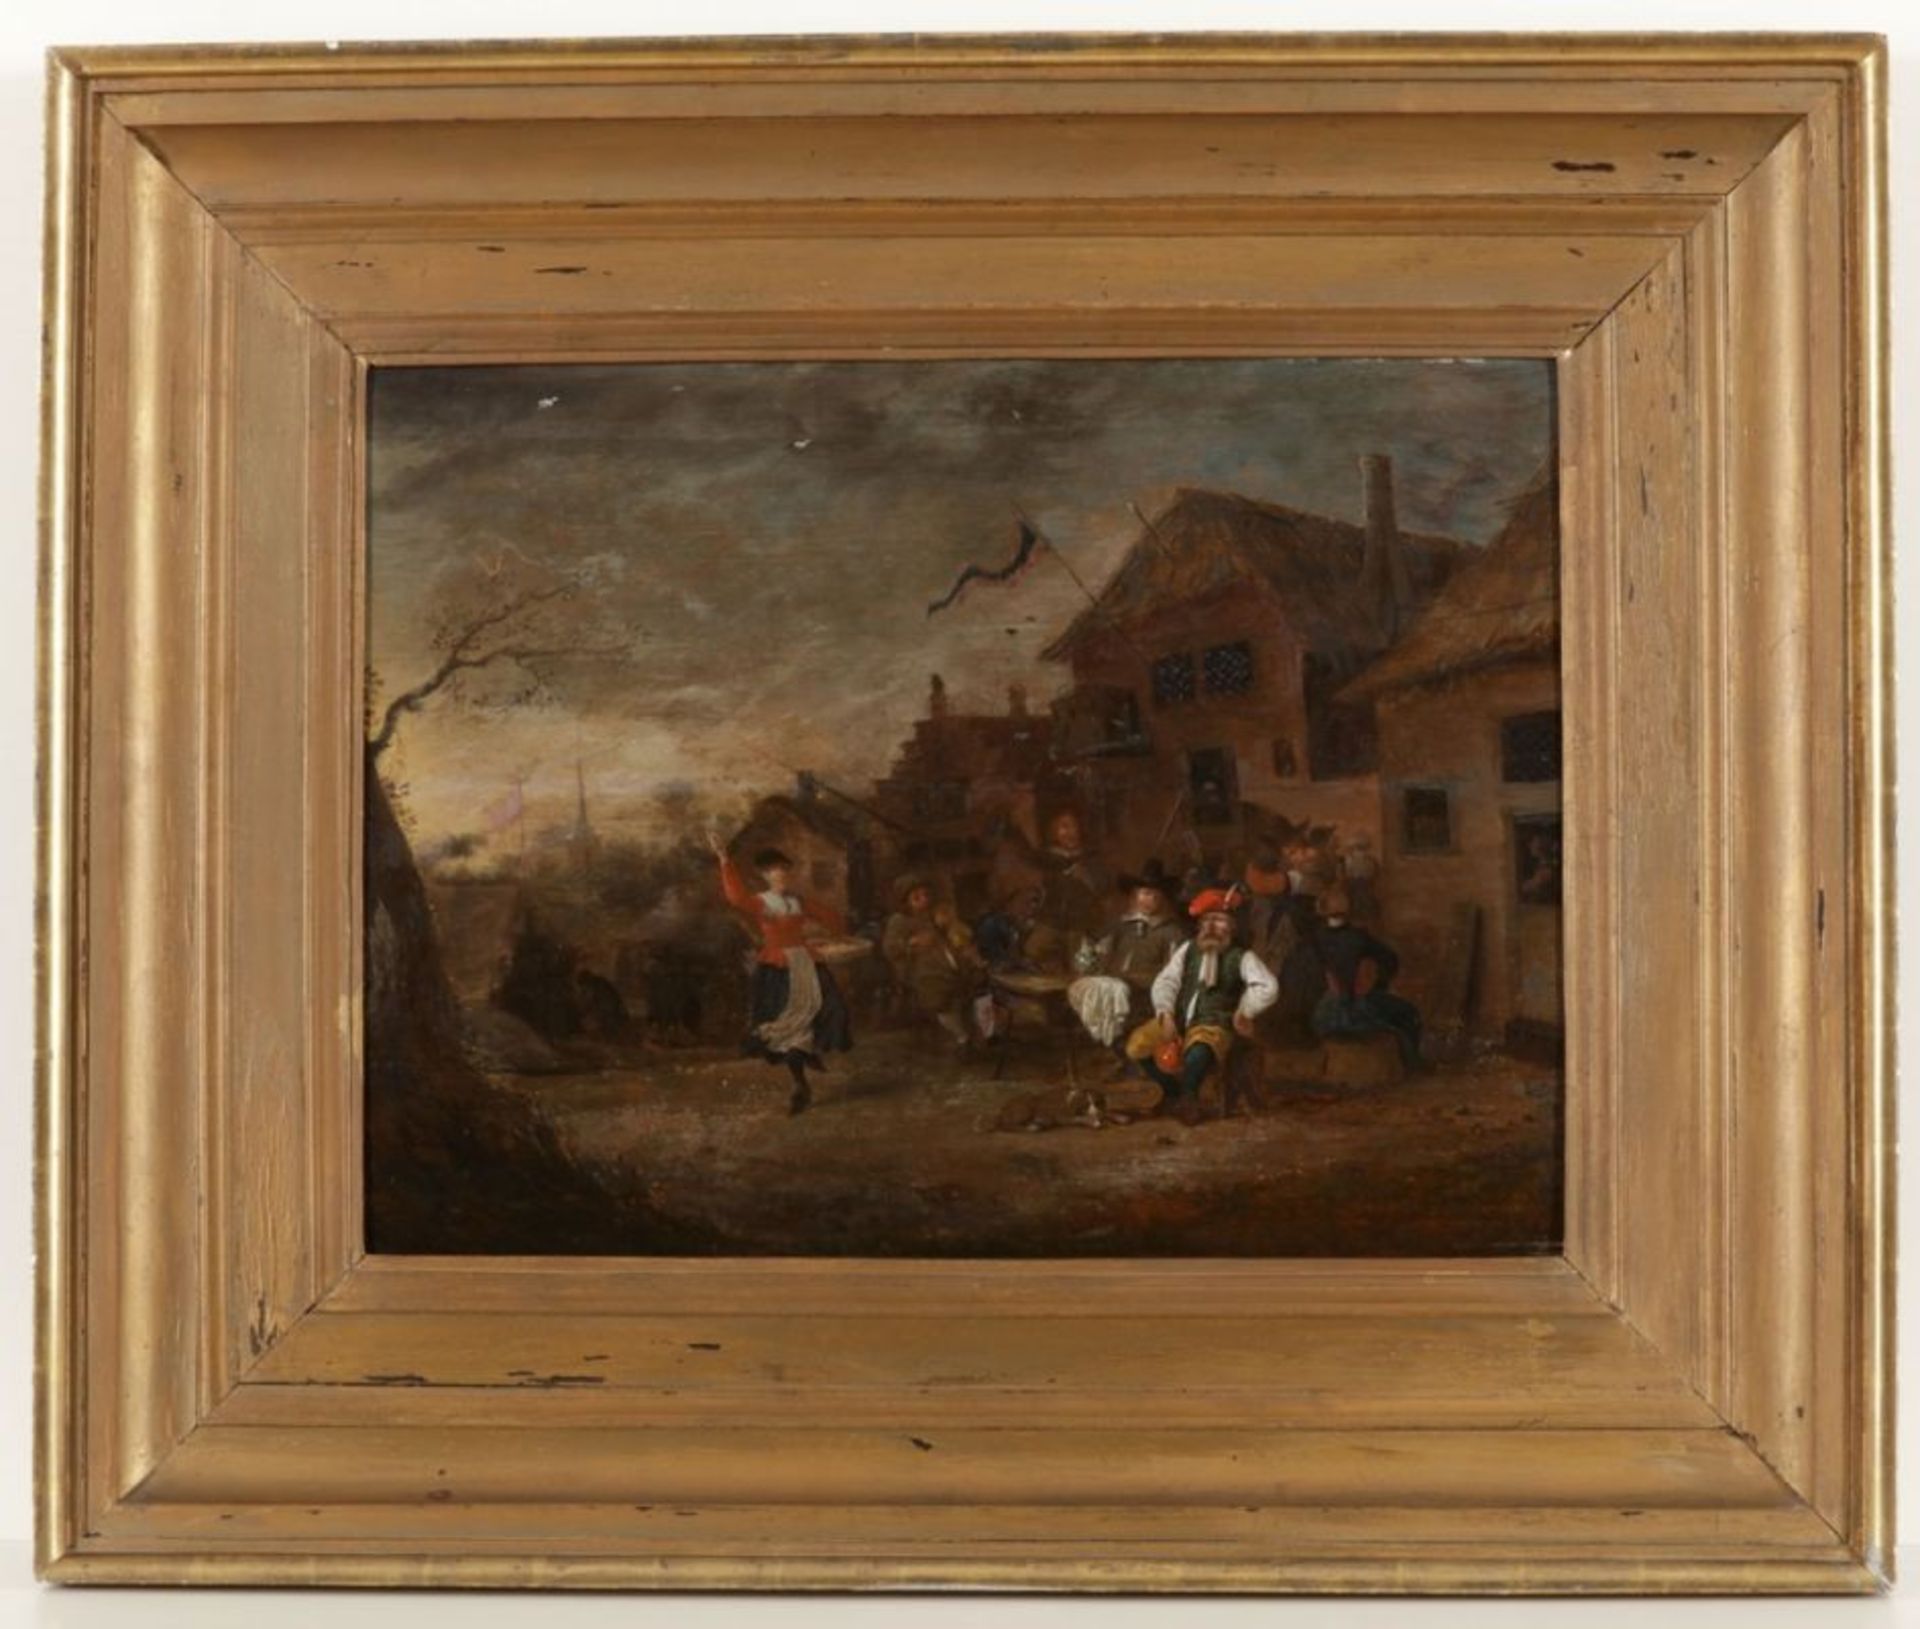 Niederländischer Künstler des 17./18. Jahrhundert- Vor dem Wirtshaus - Öl/Holz. 48 x 64 cm. Rahmen. - Image 2 of 2